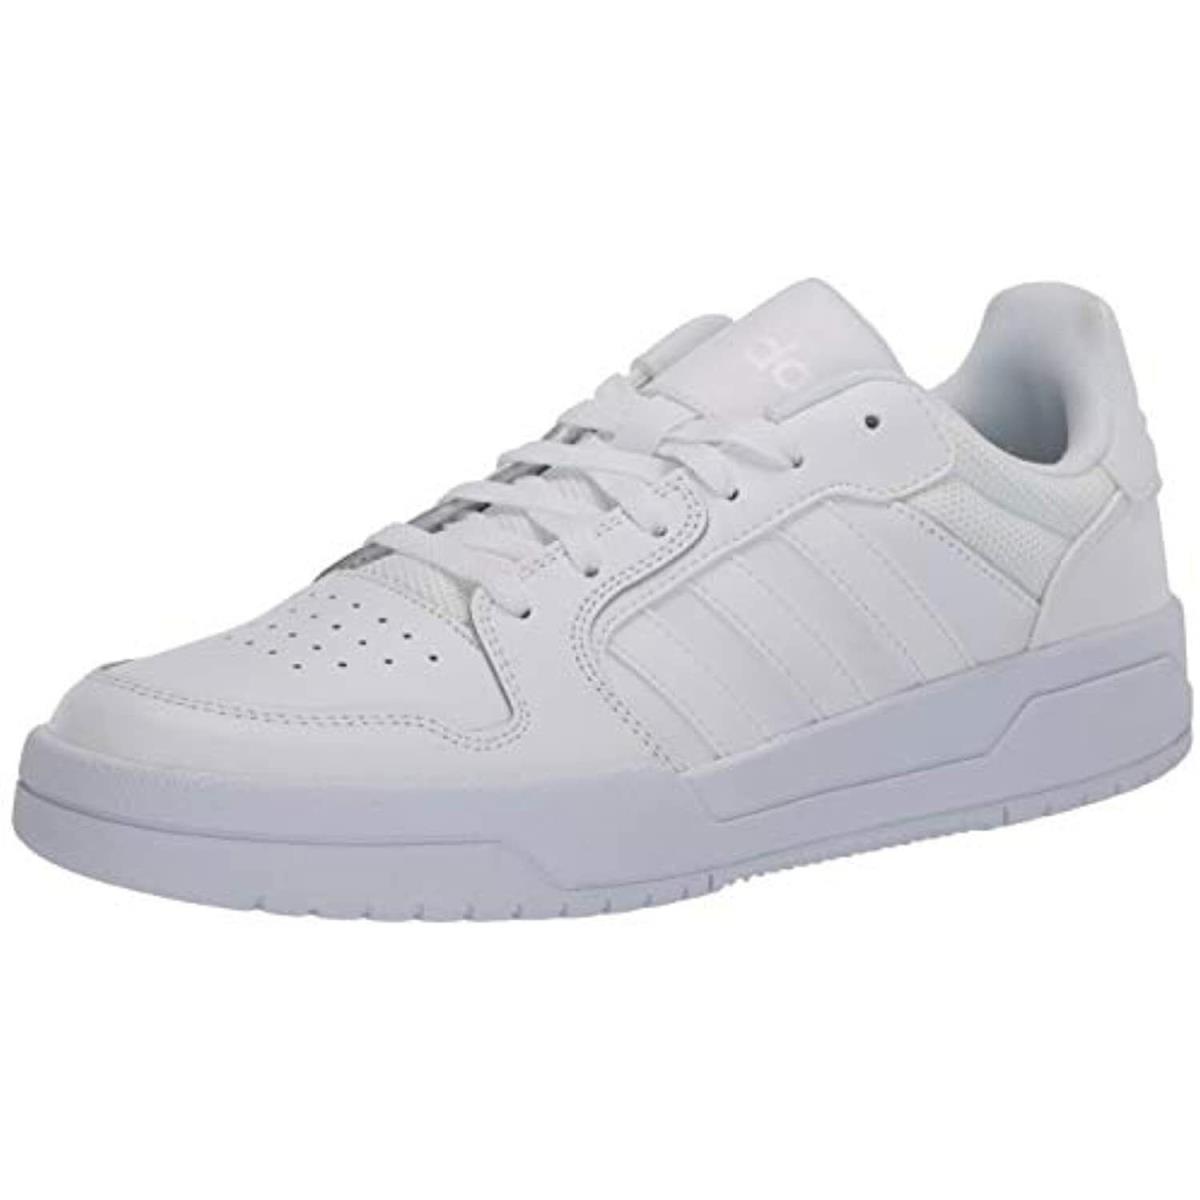 Adidas Entrap Men`s Athletic Shoes White Size 11.5